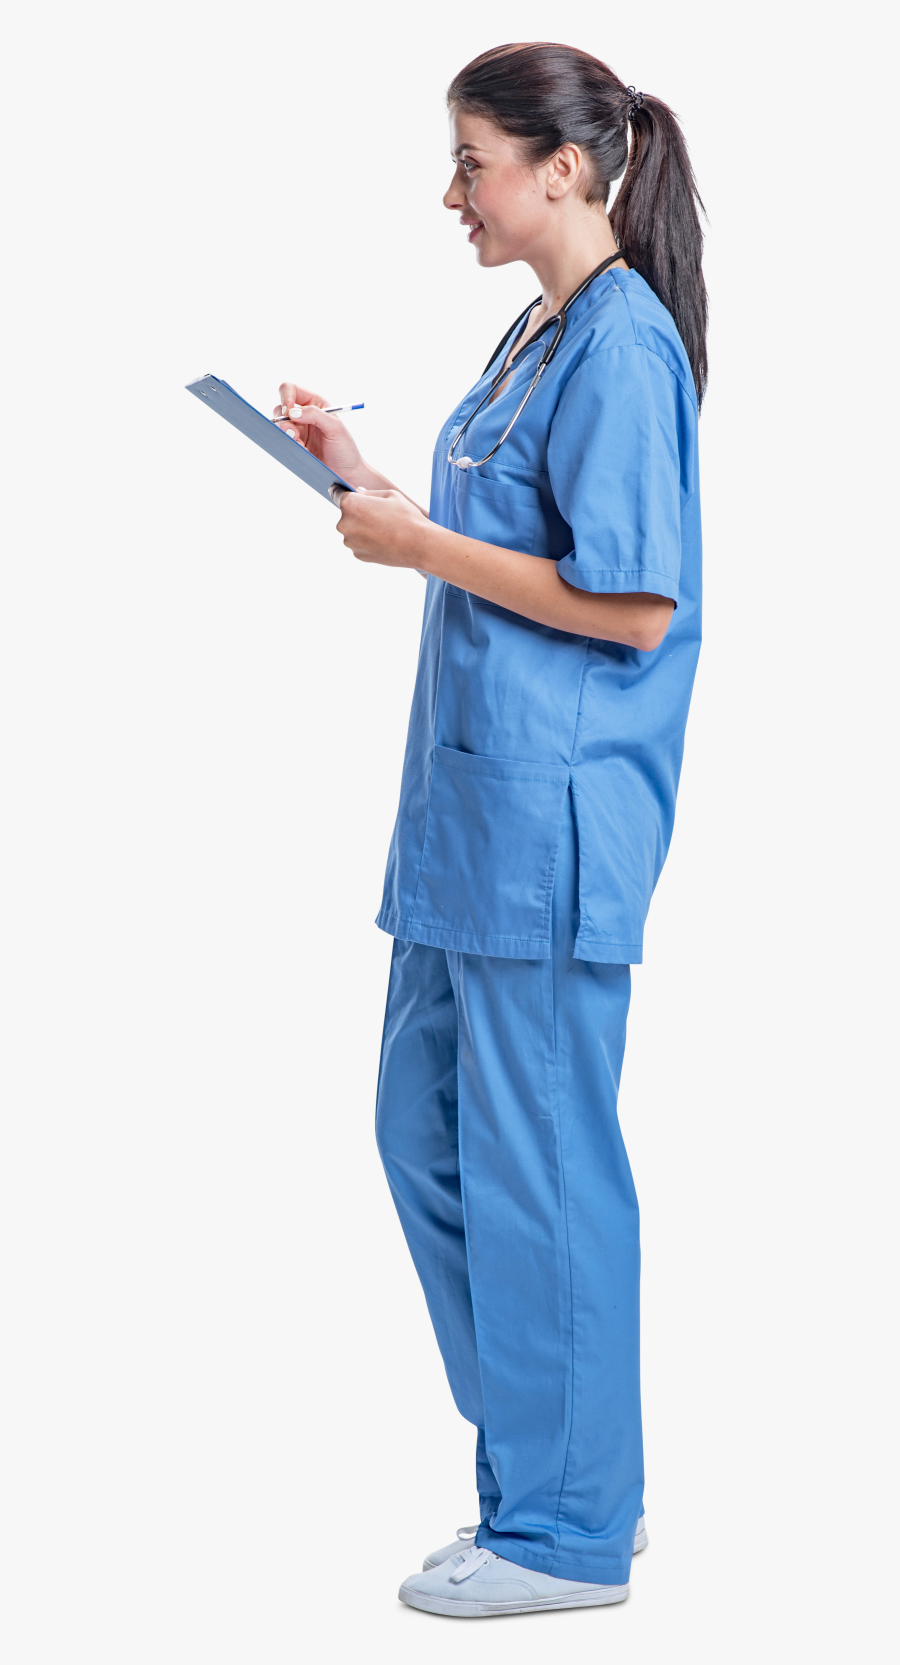 Nurse Cut Out Png, Transparent Clipart